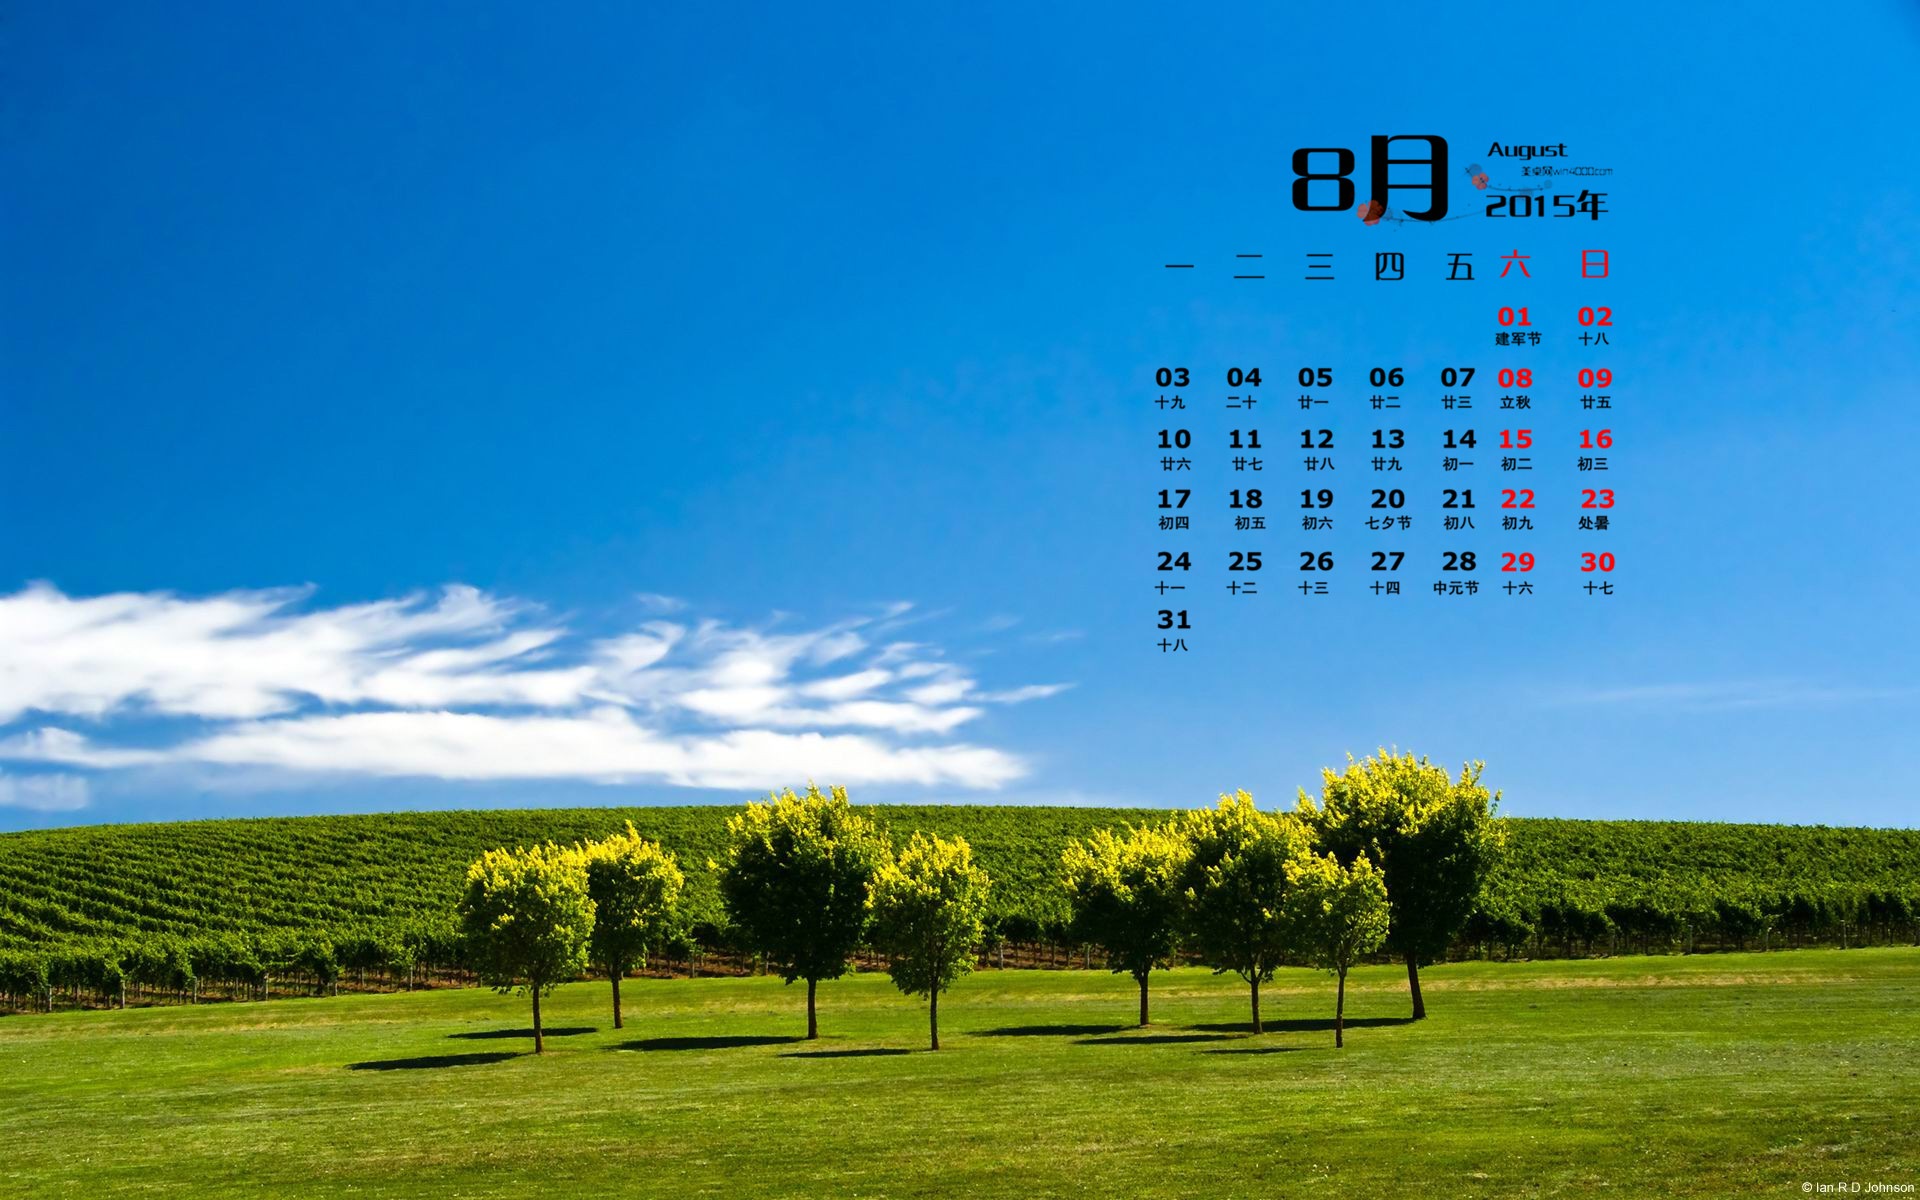 08. 2015 kalendář tapety (1) #18 - 1920x1200